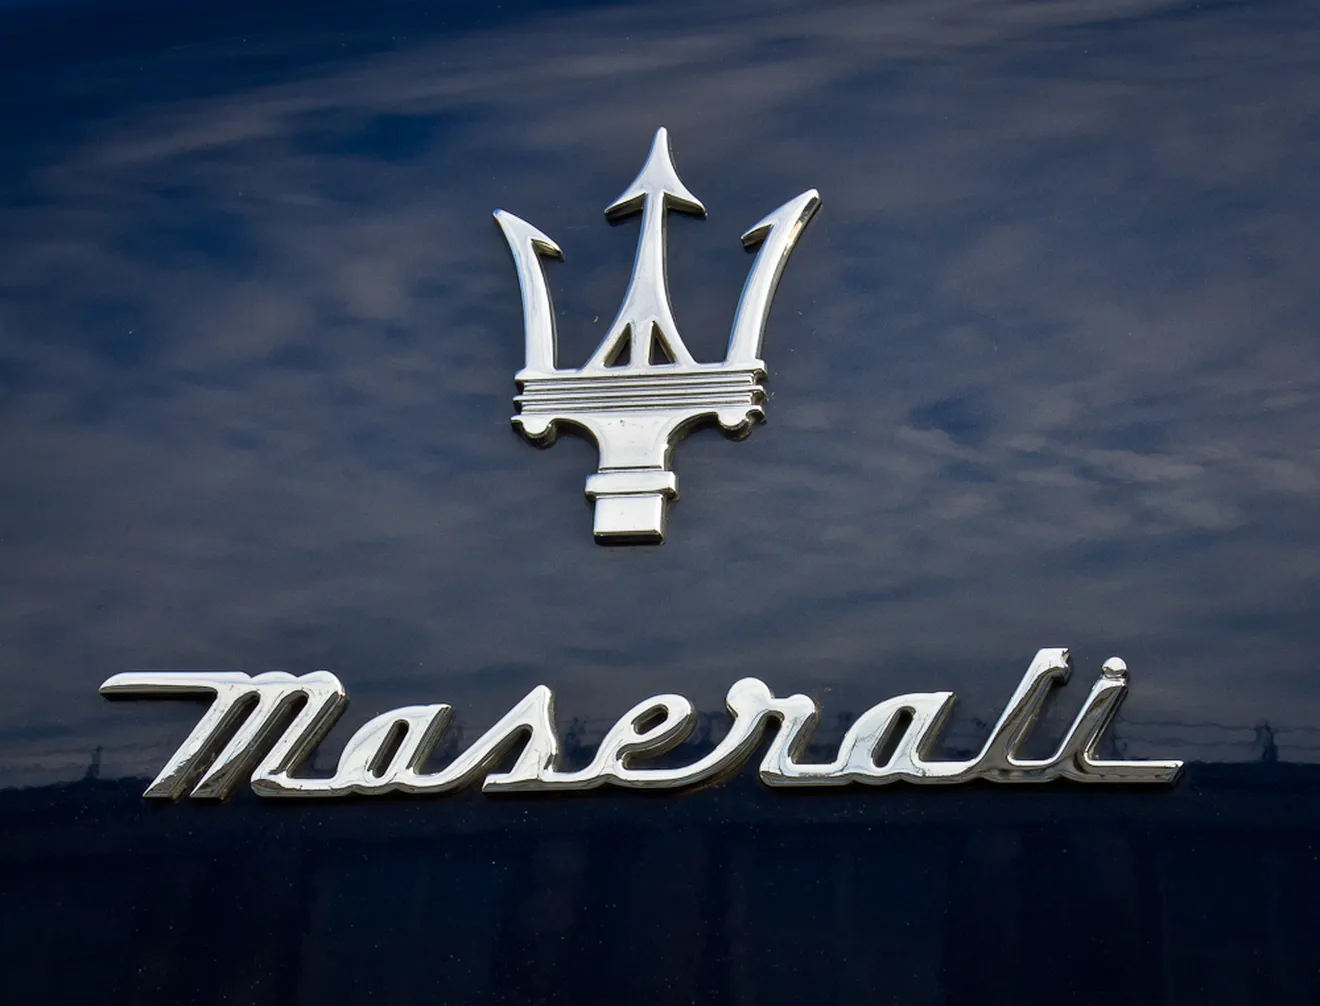 Maserati celebra su centenario, repaso histórico a una marca especial